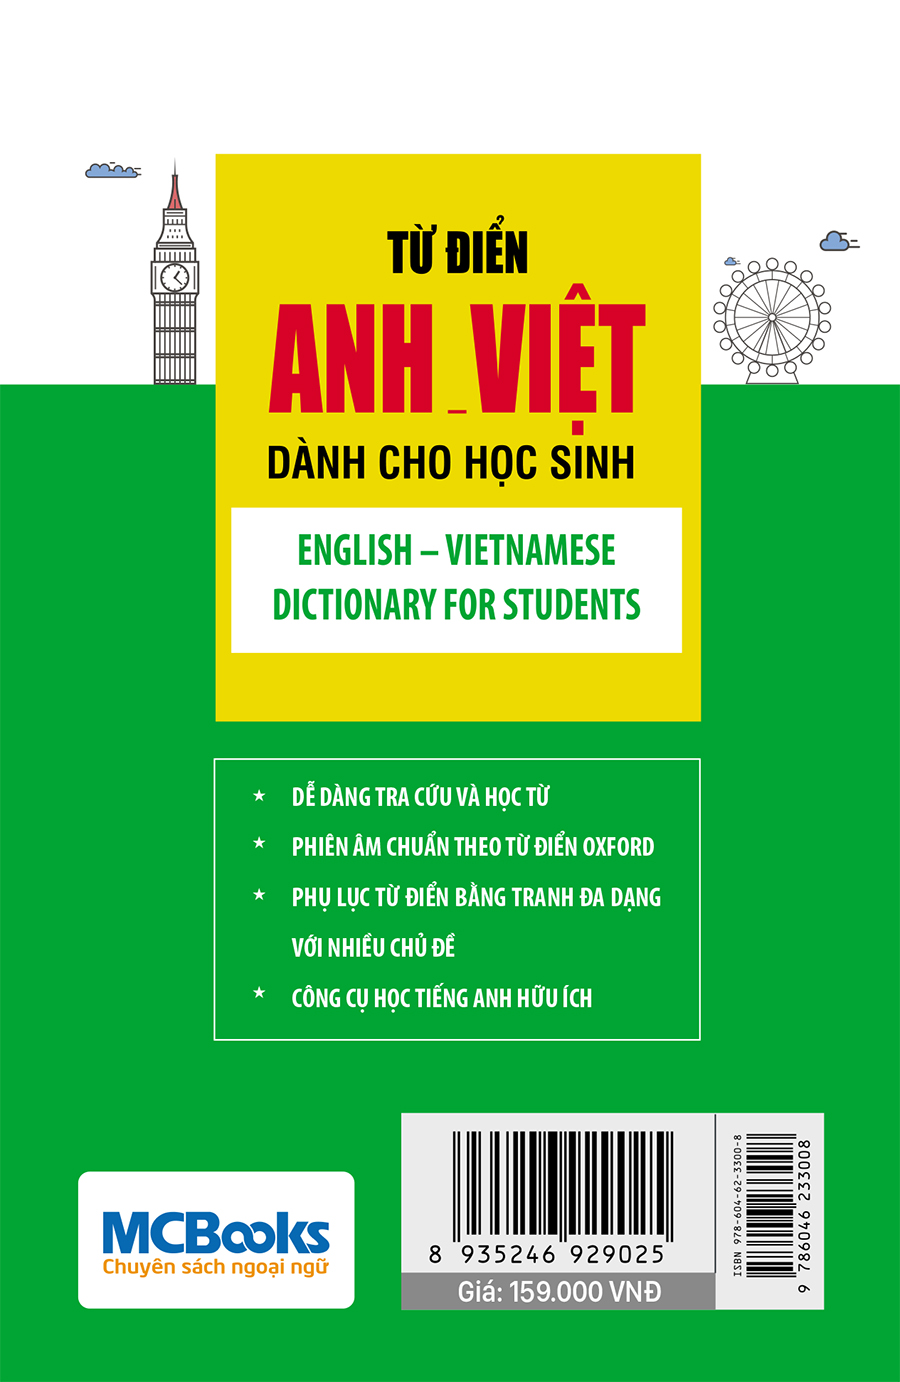 Từ điển Anh – Việt dành cho học sinh bìa sau